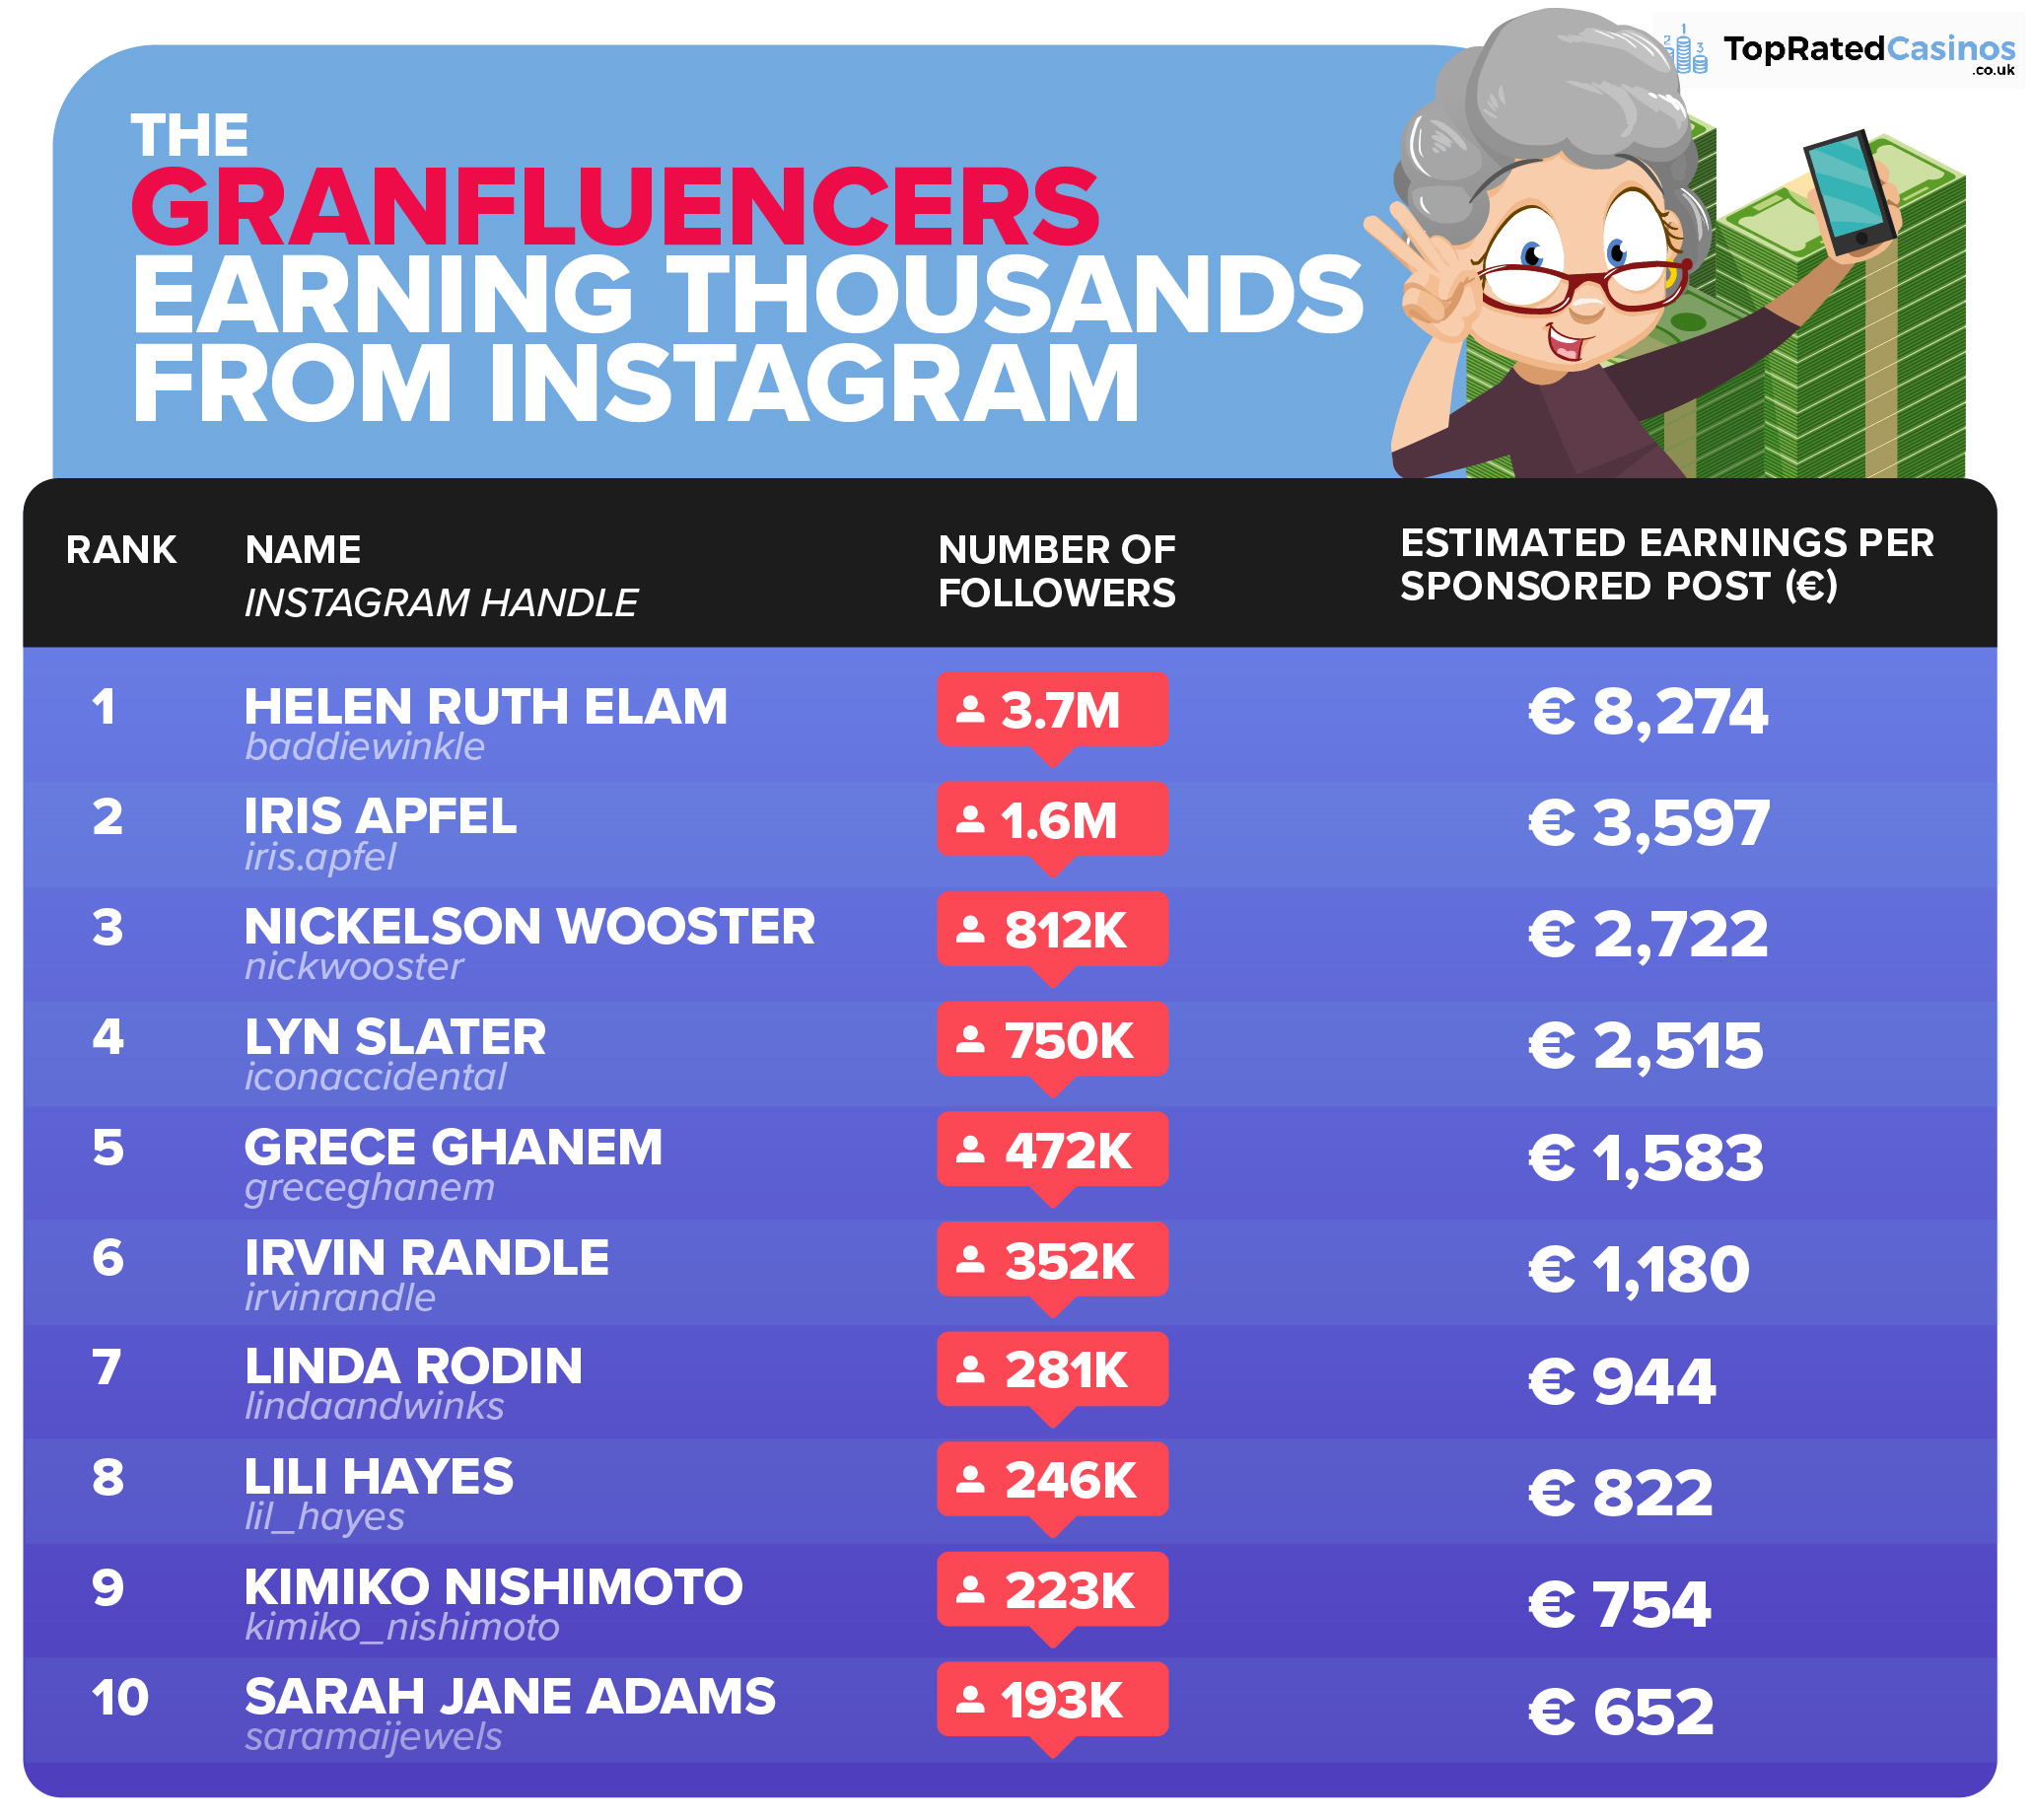 granfluencers-instagram-earnings-infographic-euros.jpg